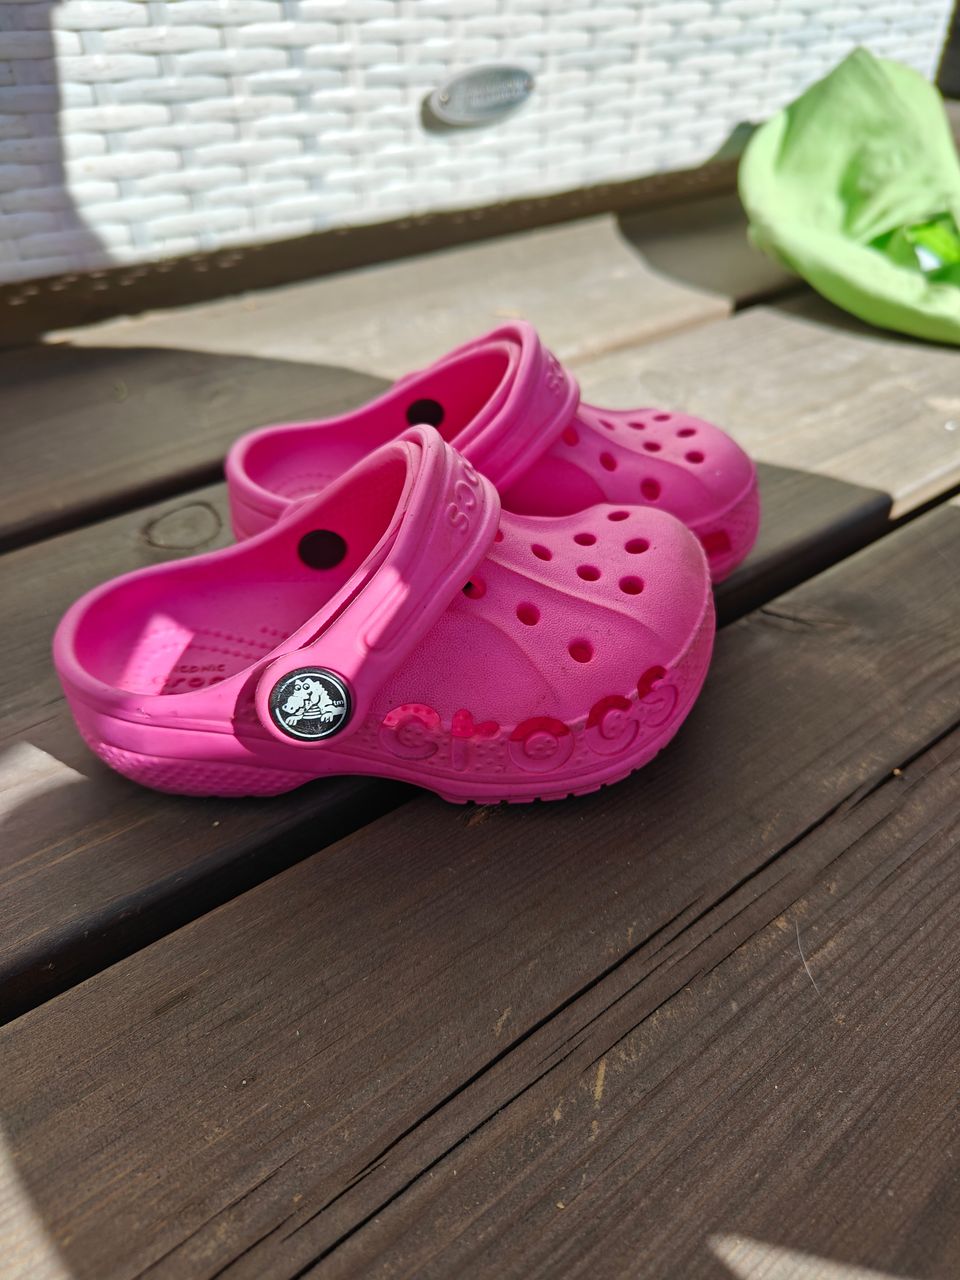 Lasten Crocs sandaalit